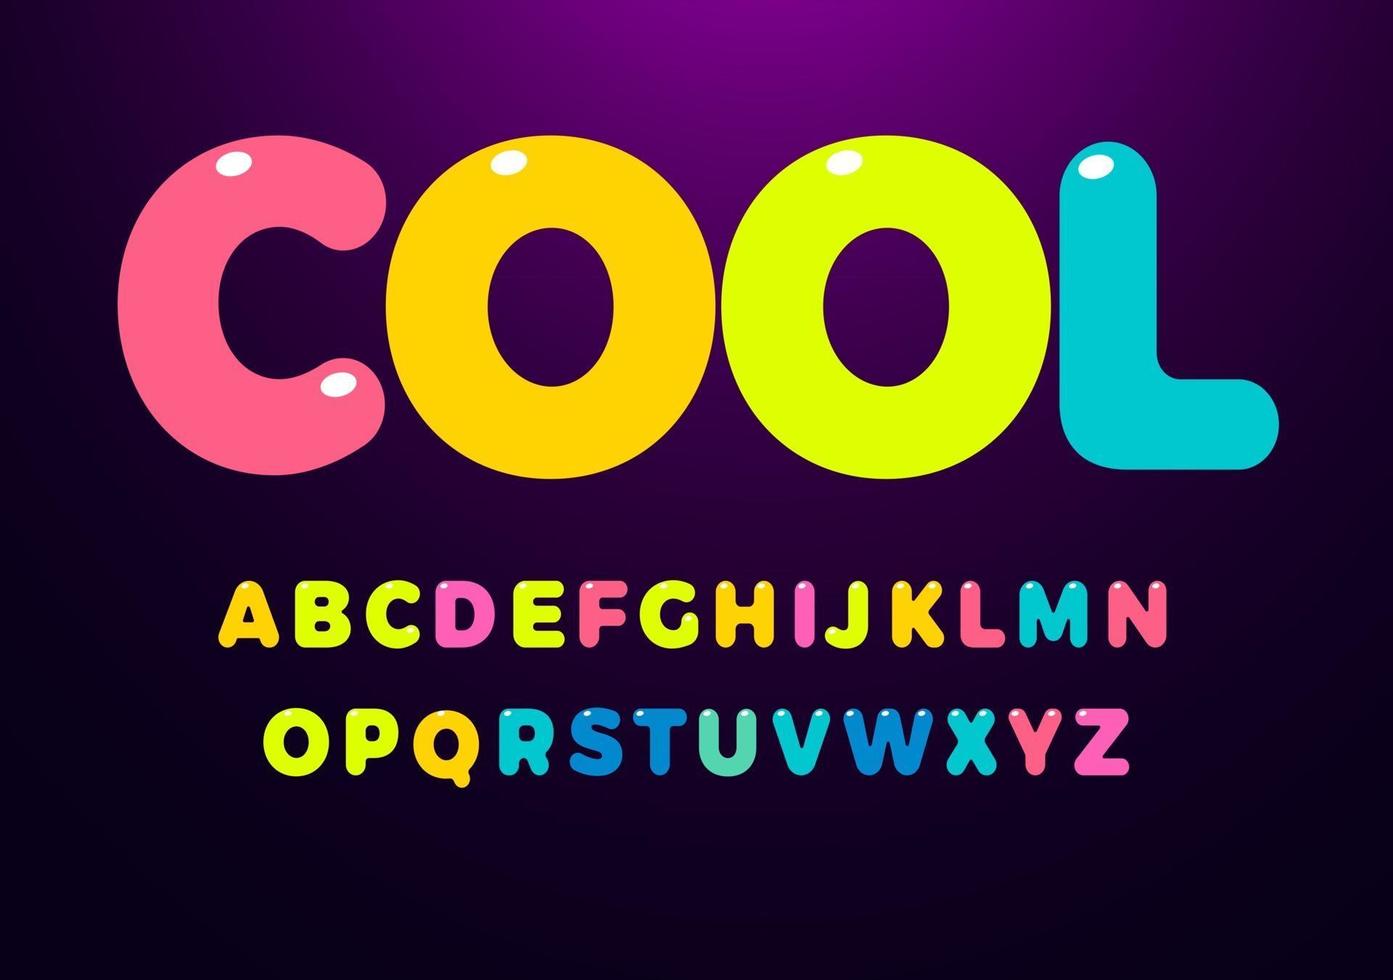 ljusa coola färgade bokstäver. djärvt rundat glansigt alfabet för barnstil. teckensnitt för evenemang, kampanjer, logotyper, banner, monogram och affisch. vektor typografi design.